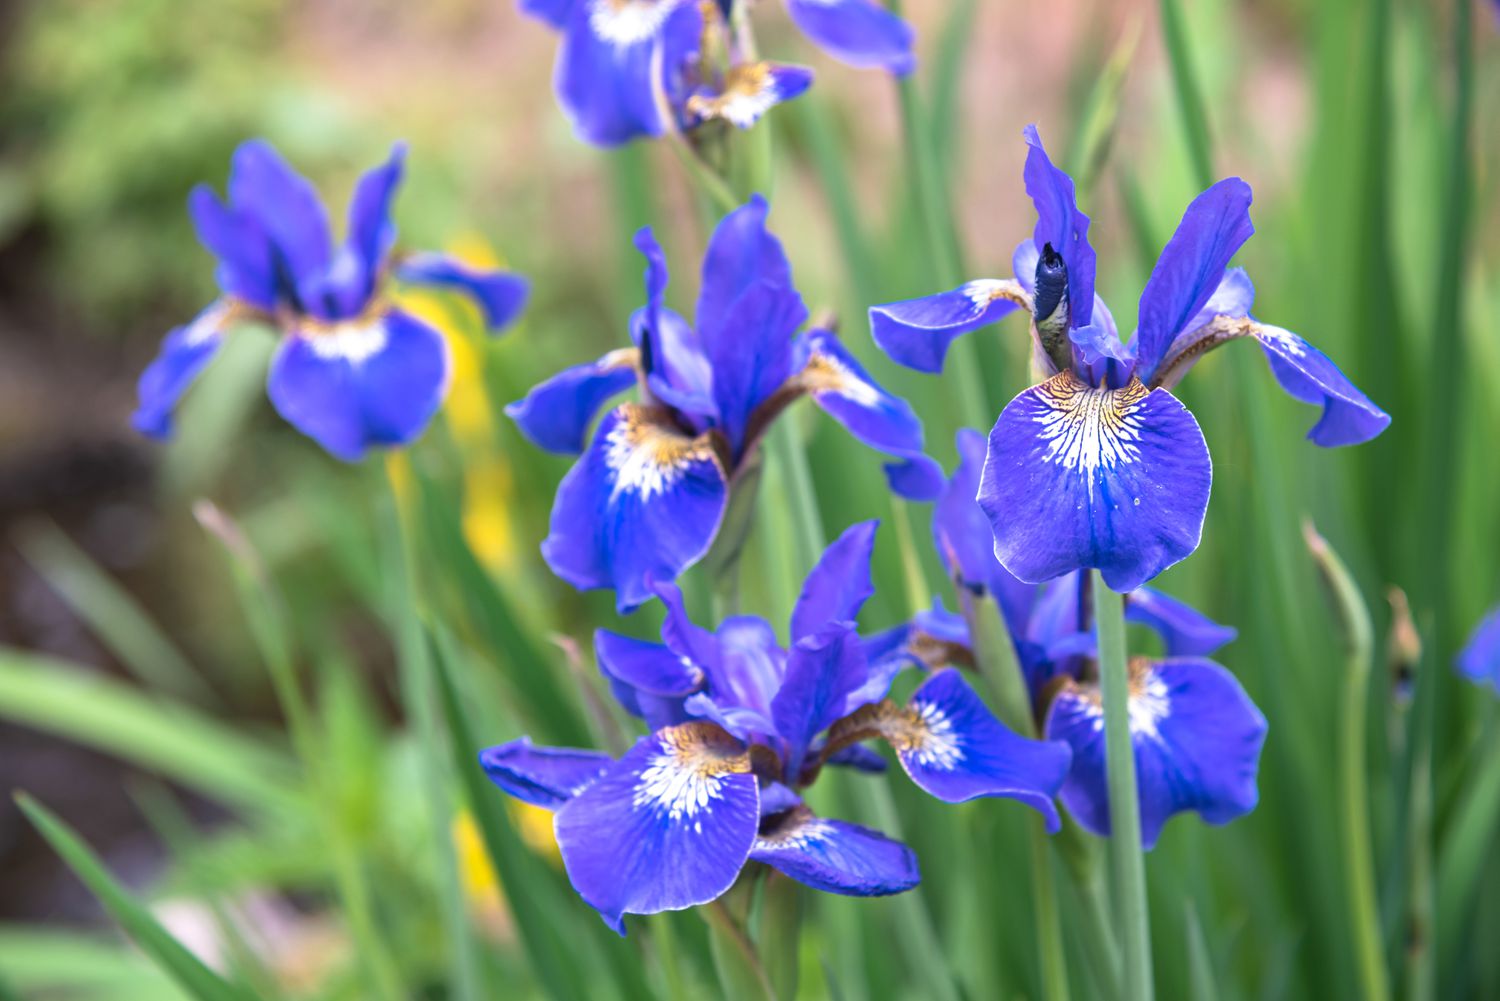 Íris siberiana planta com flores azul-púrpura com centros brancos e amarelos